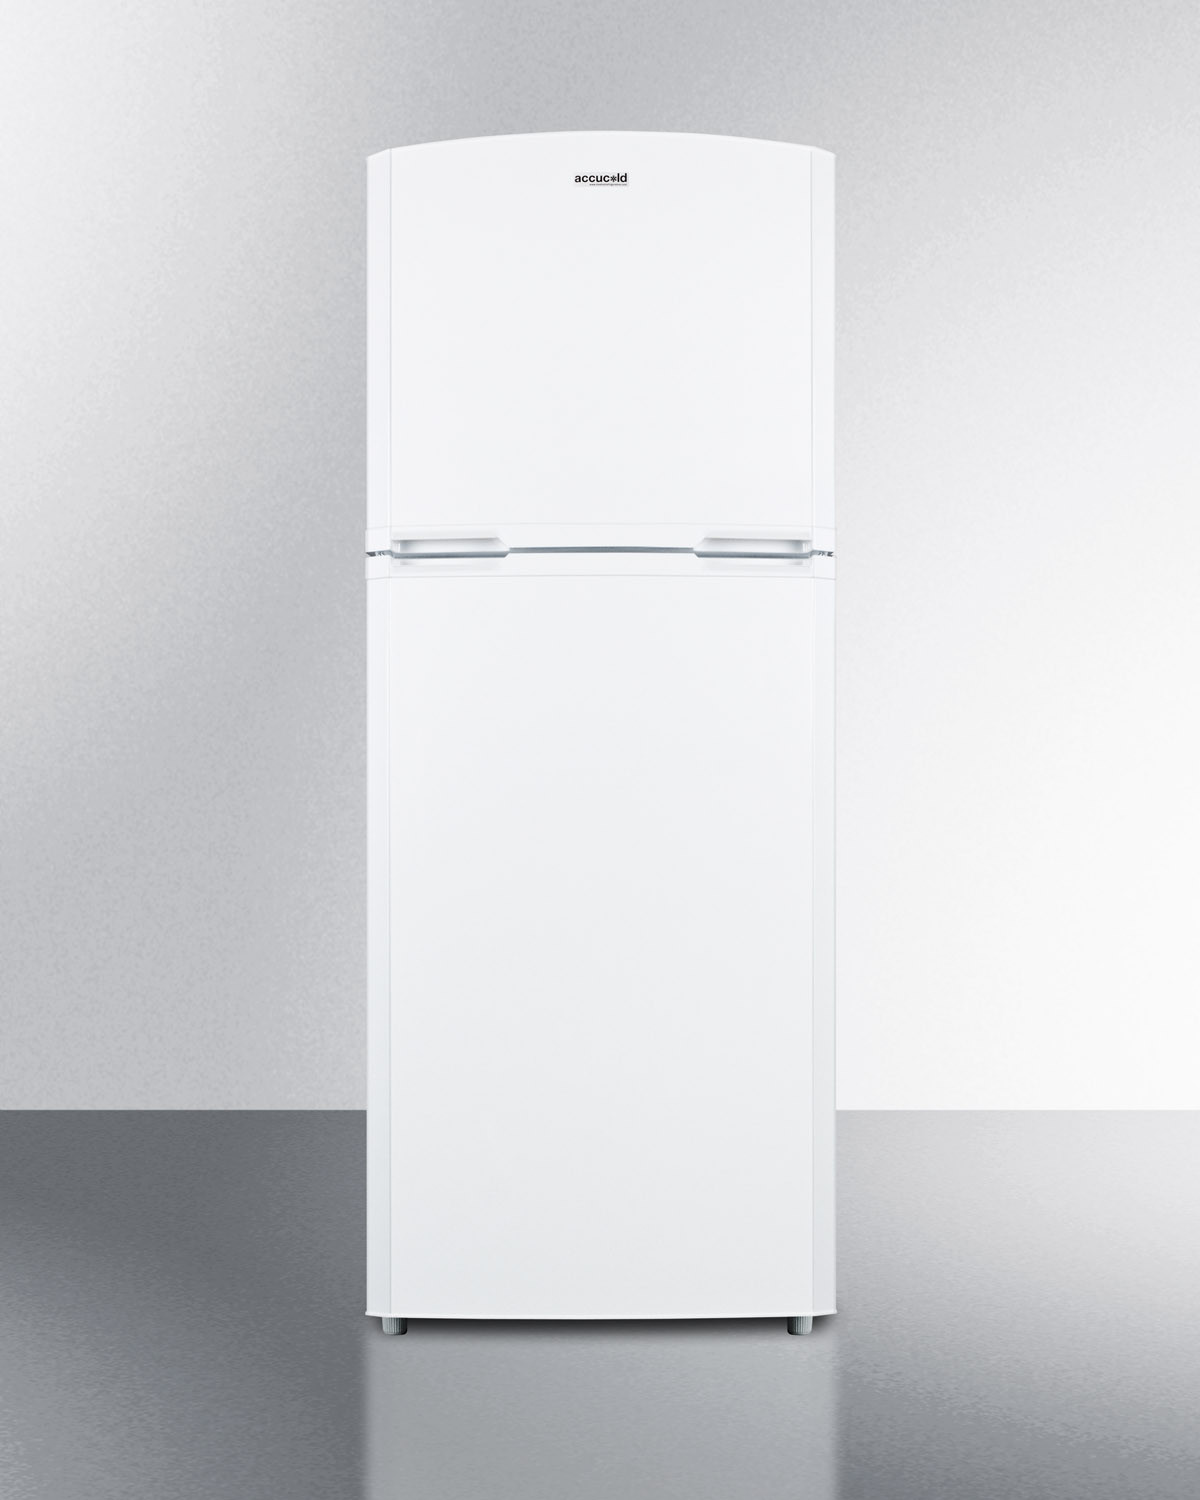 Summit 26 Inch 26"" Counter Depth Top Freezer Refrigerator FF1427WIM -  Summit Appliance